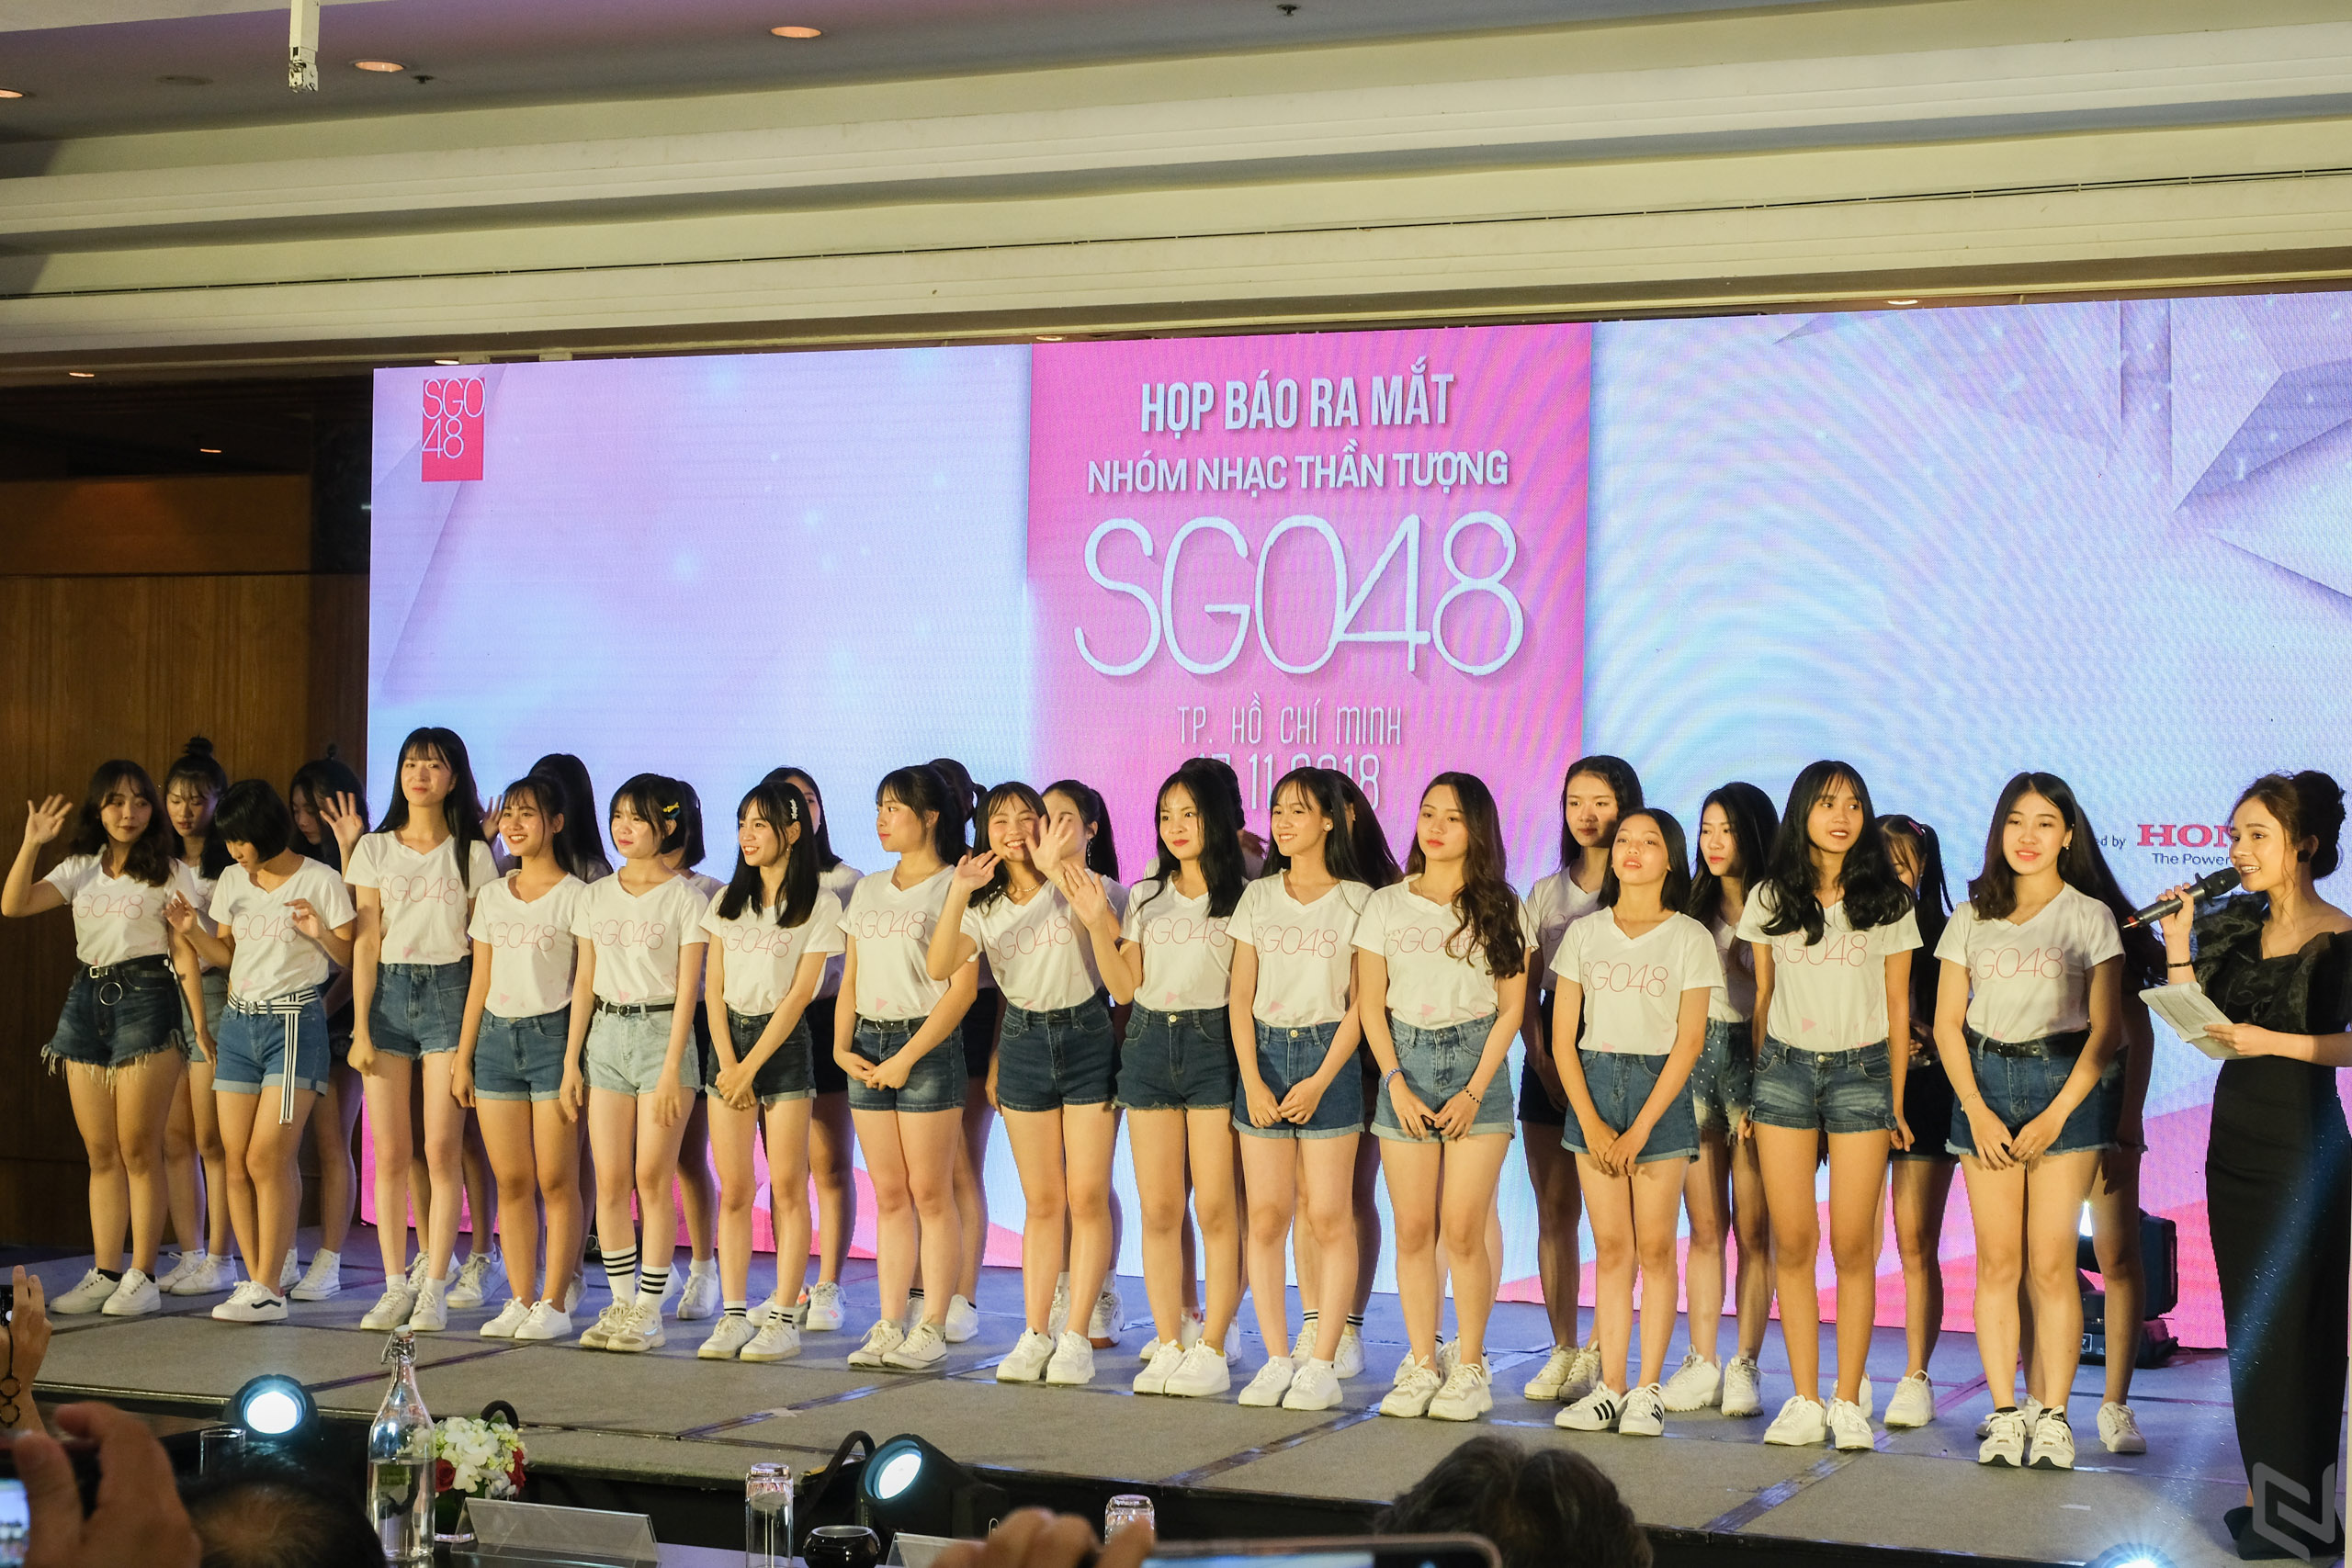 SGO48 nhóm nhạc chị em chính thức của AKB48 ra mắt thế hệ đầu tiên tại Việt Nam